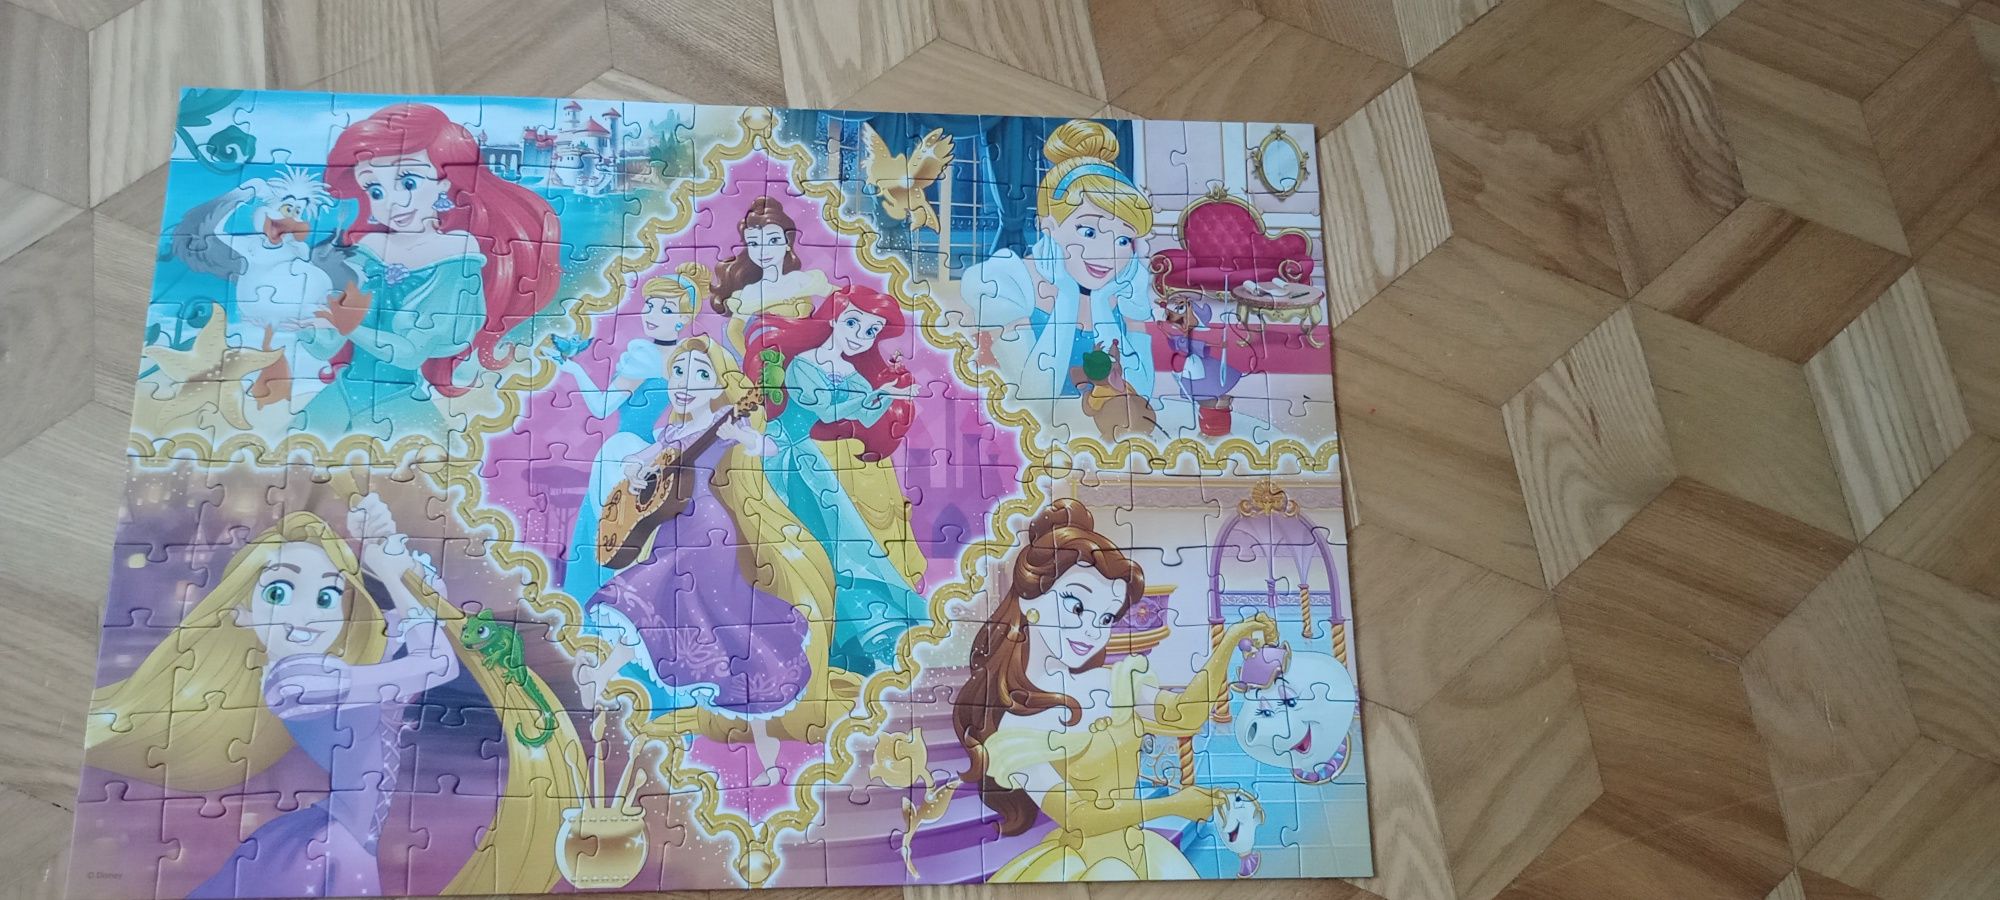 Puzzle Trefl 160 księżniczki